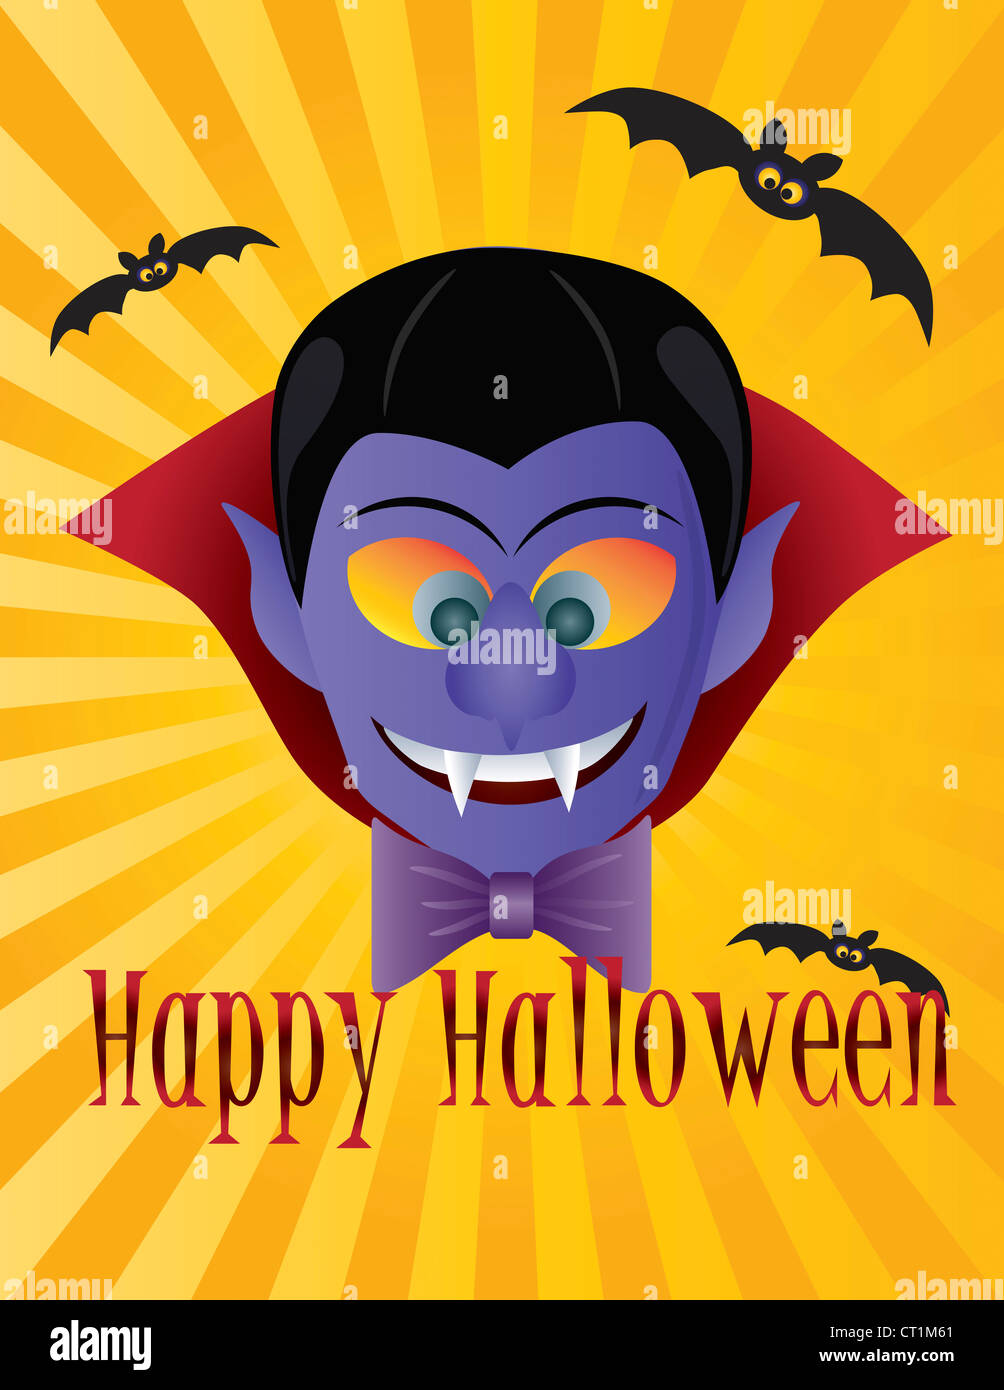 Happy Halloween Le Comte Dracula avec les chauves-souris les rayons du soleil et de l'illustration du texte Banque D'Images